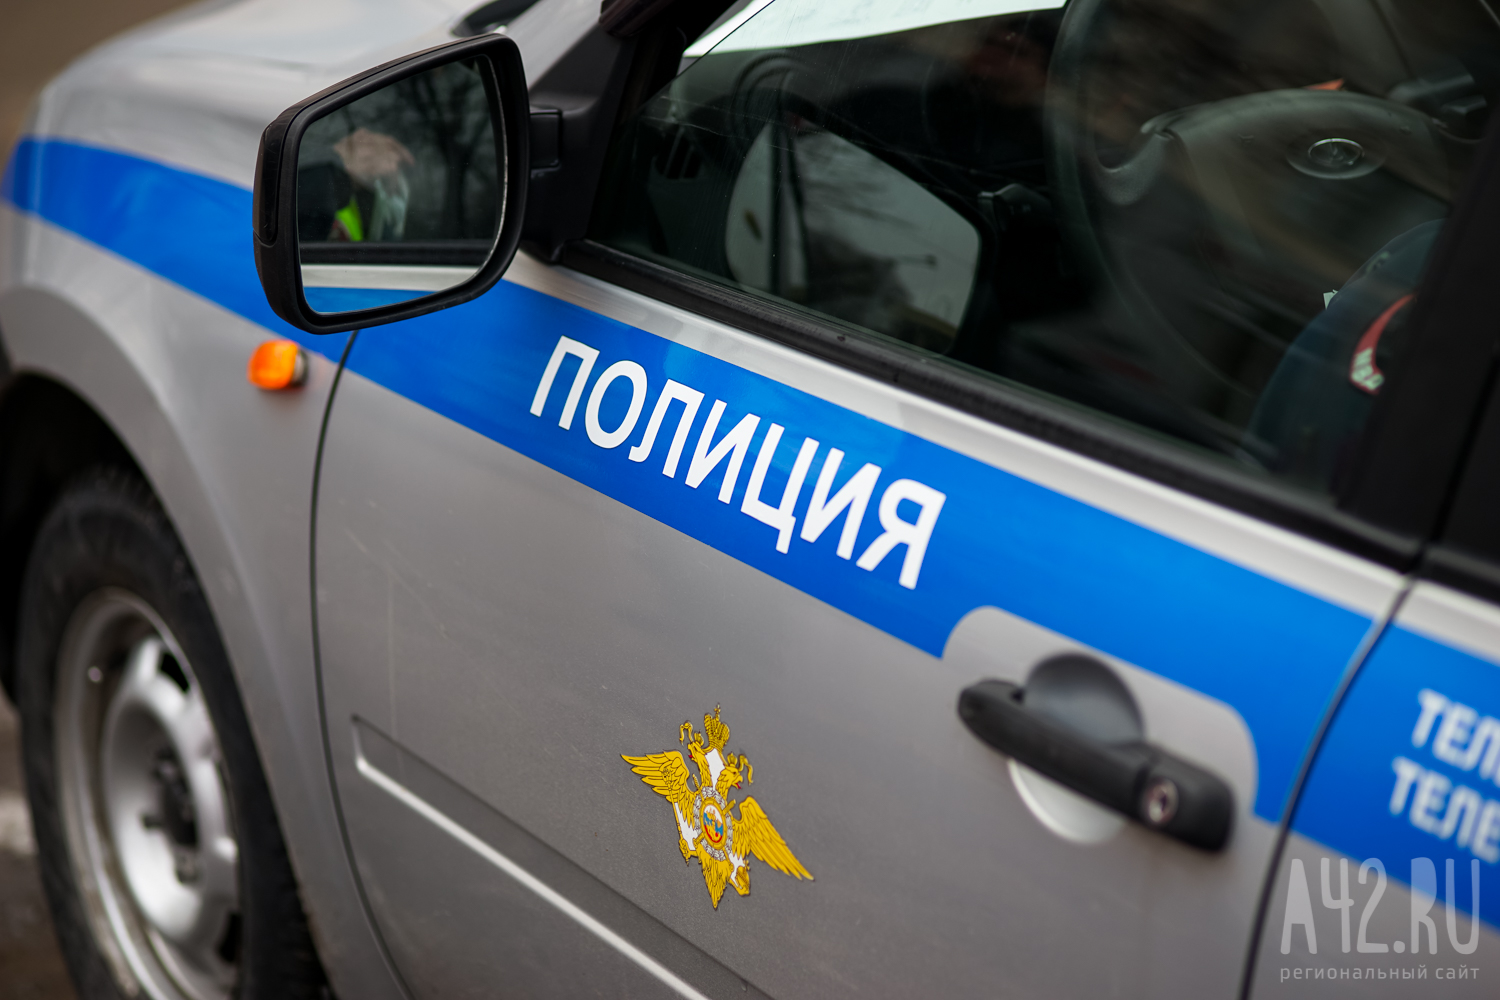 В Петропавловске-Камчатском пенсионерка напала на судебных приставов и полицейского с перцовым баллоном